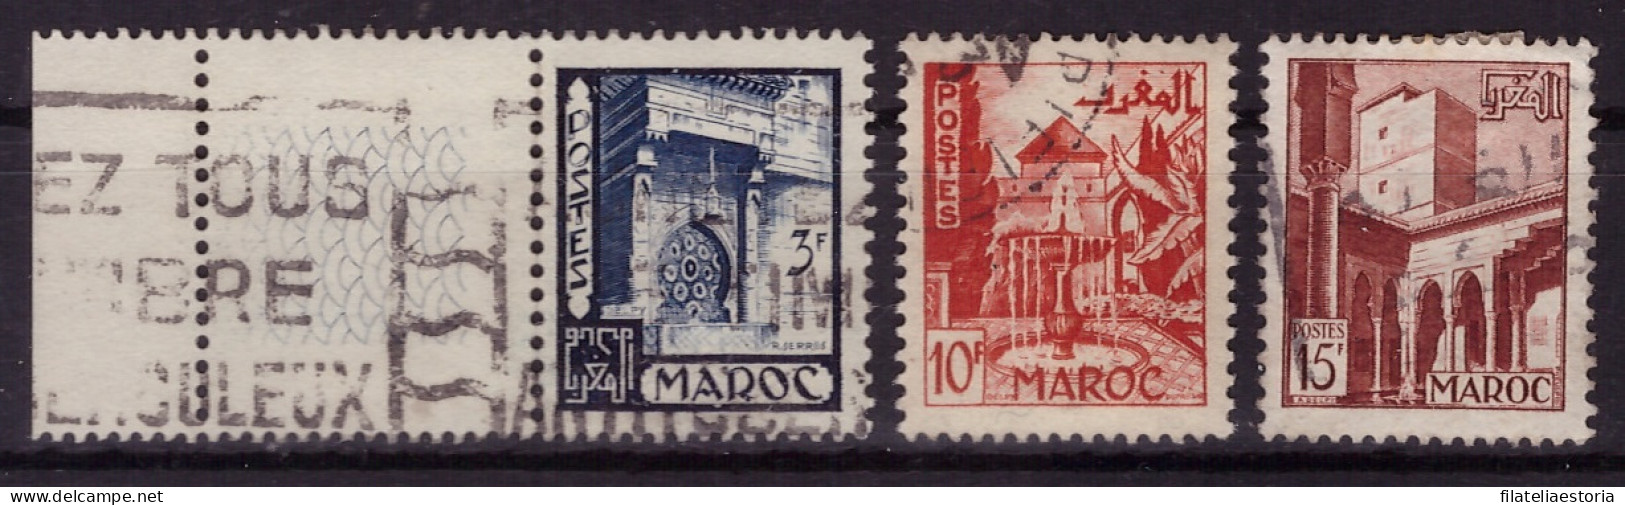 Maroc 1949/1951 - Oblitéré - Bâtiments - Monuments - Michel Nr. 300 303 305 (mar282) - Oblitérés